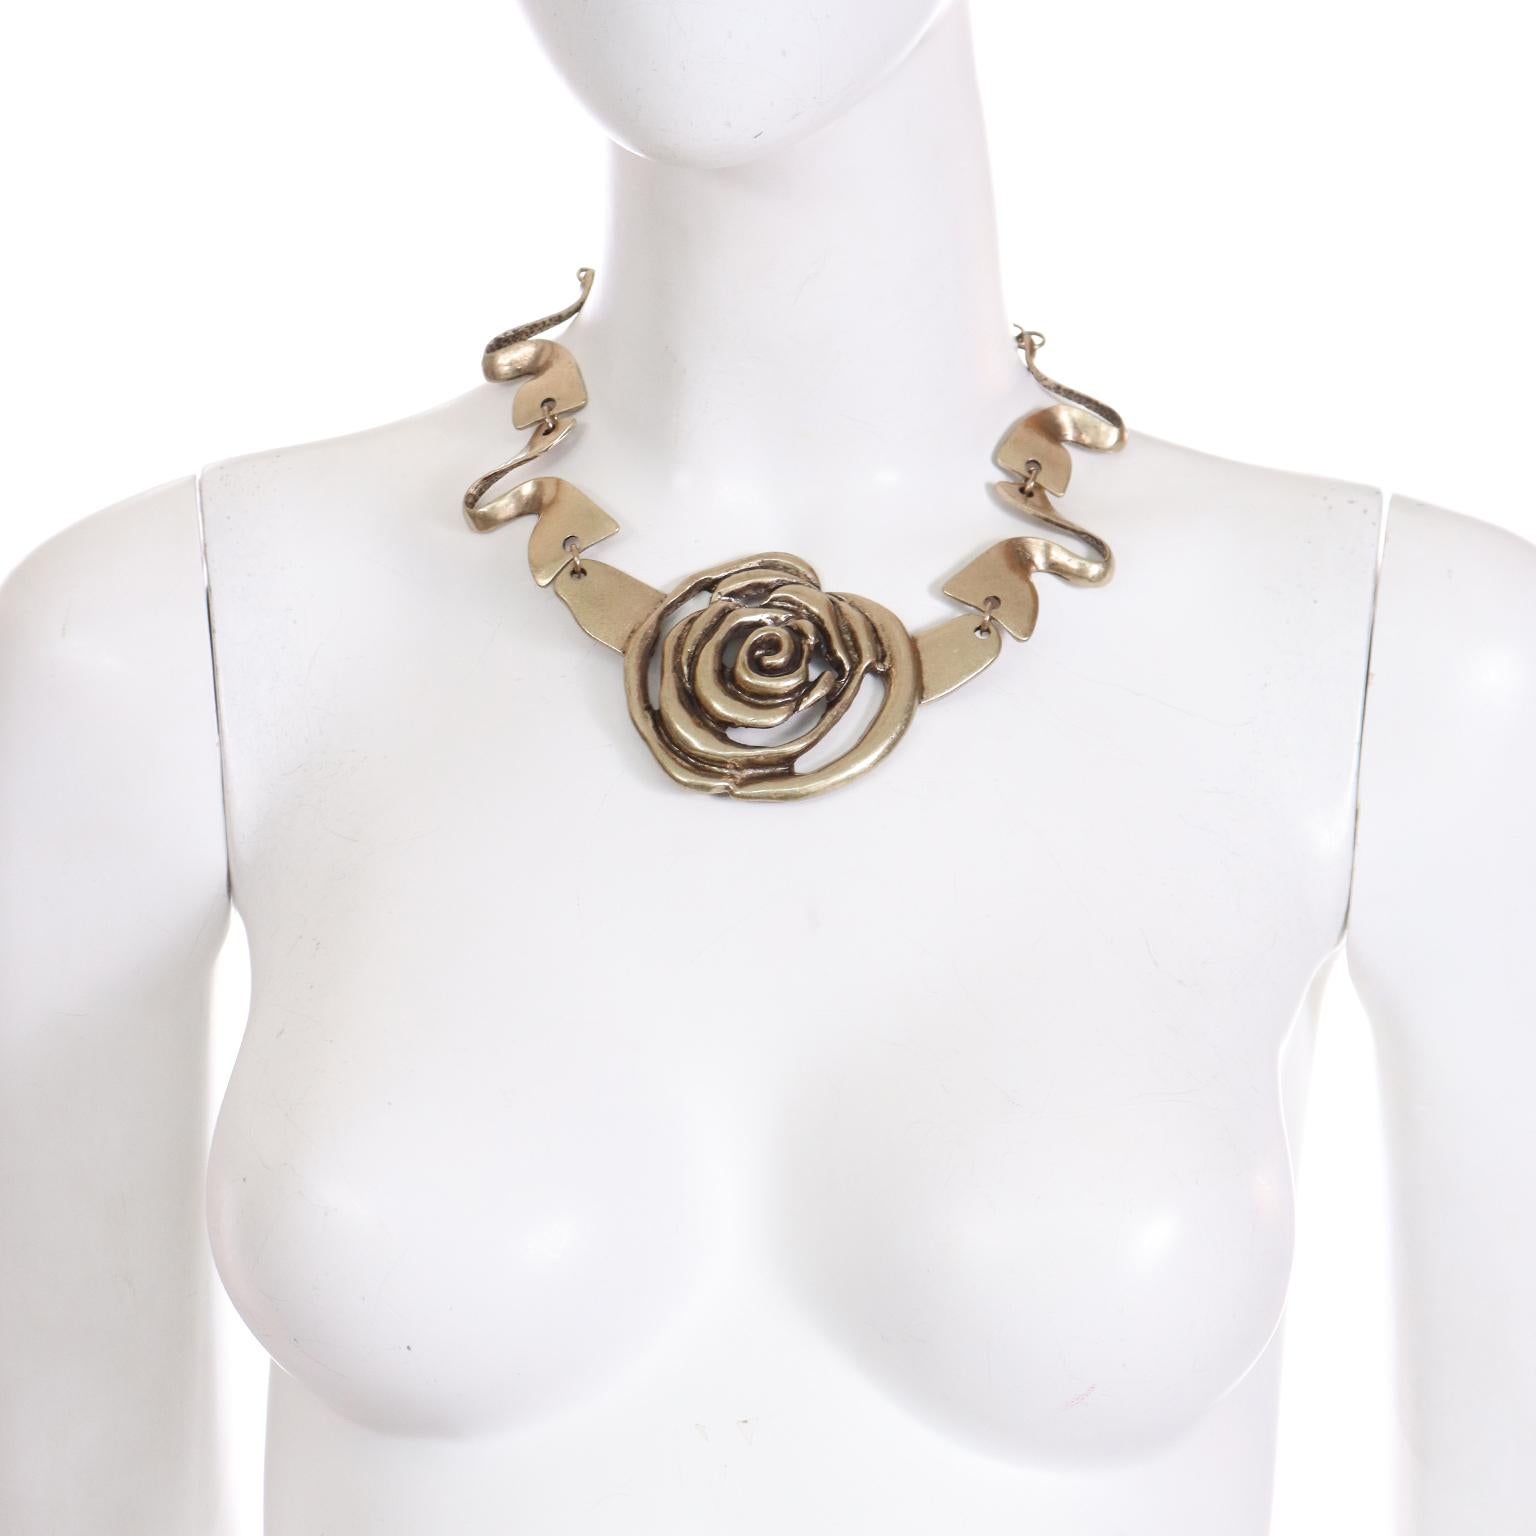 Il s'agit d'un joli collier Oscar de la Renta avec une grande rose centrale découpée. Ce merveilleux collier comporte des maillons ondulés et une longue chaîne réglable à l'arrière. Cette pièce a un aspect brutaliste forgé à la main, avec un dessous